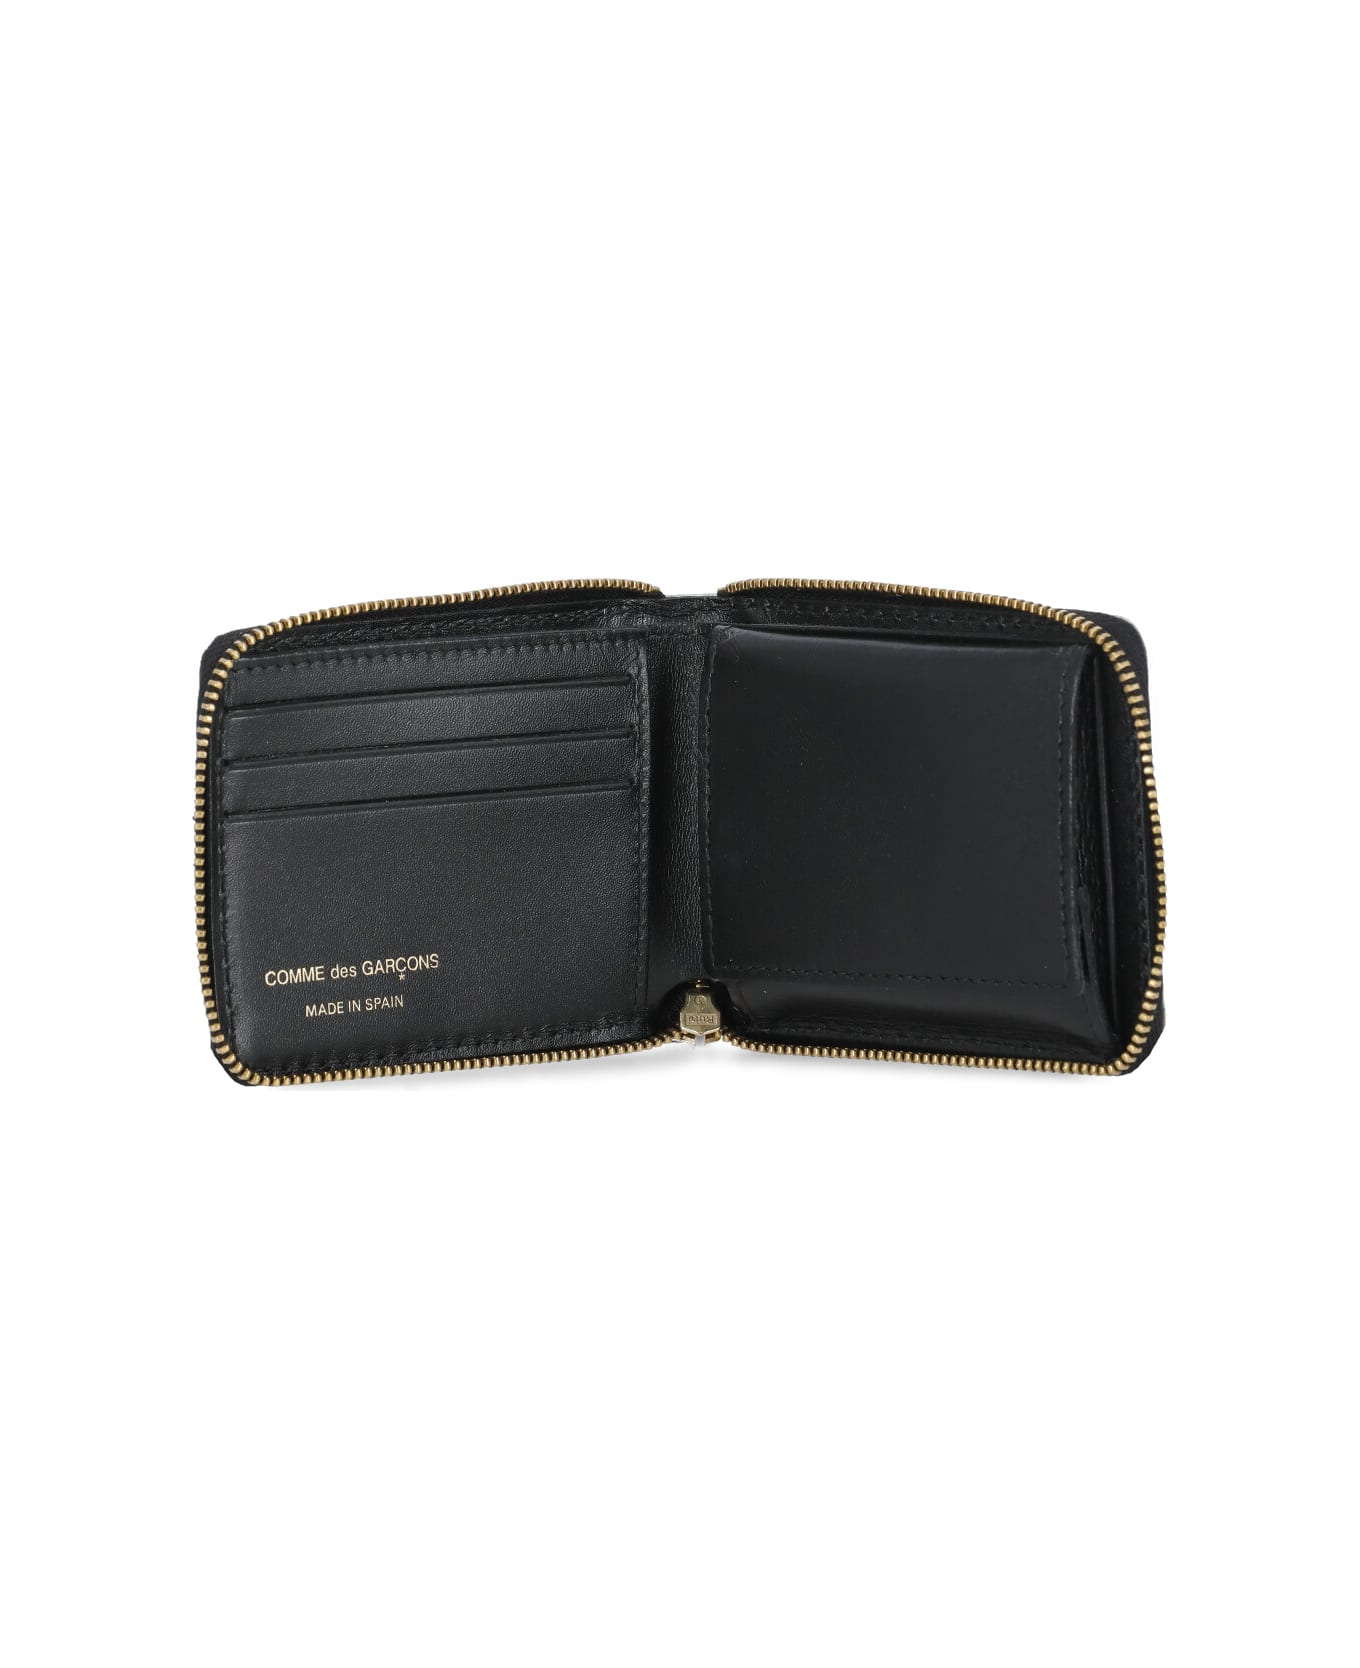 Comme des Garçons Wallet Wallet With A Tartan Pattern - Green 財布